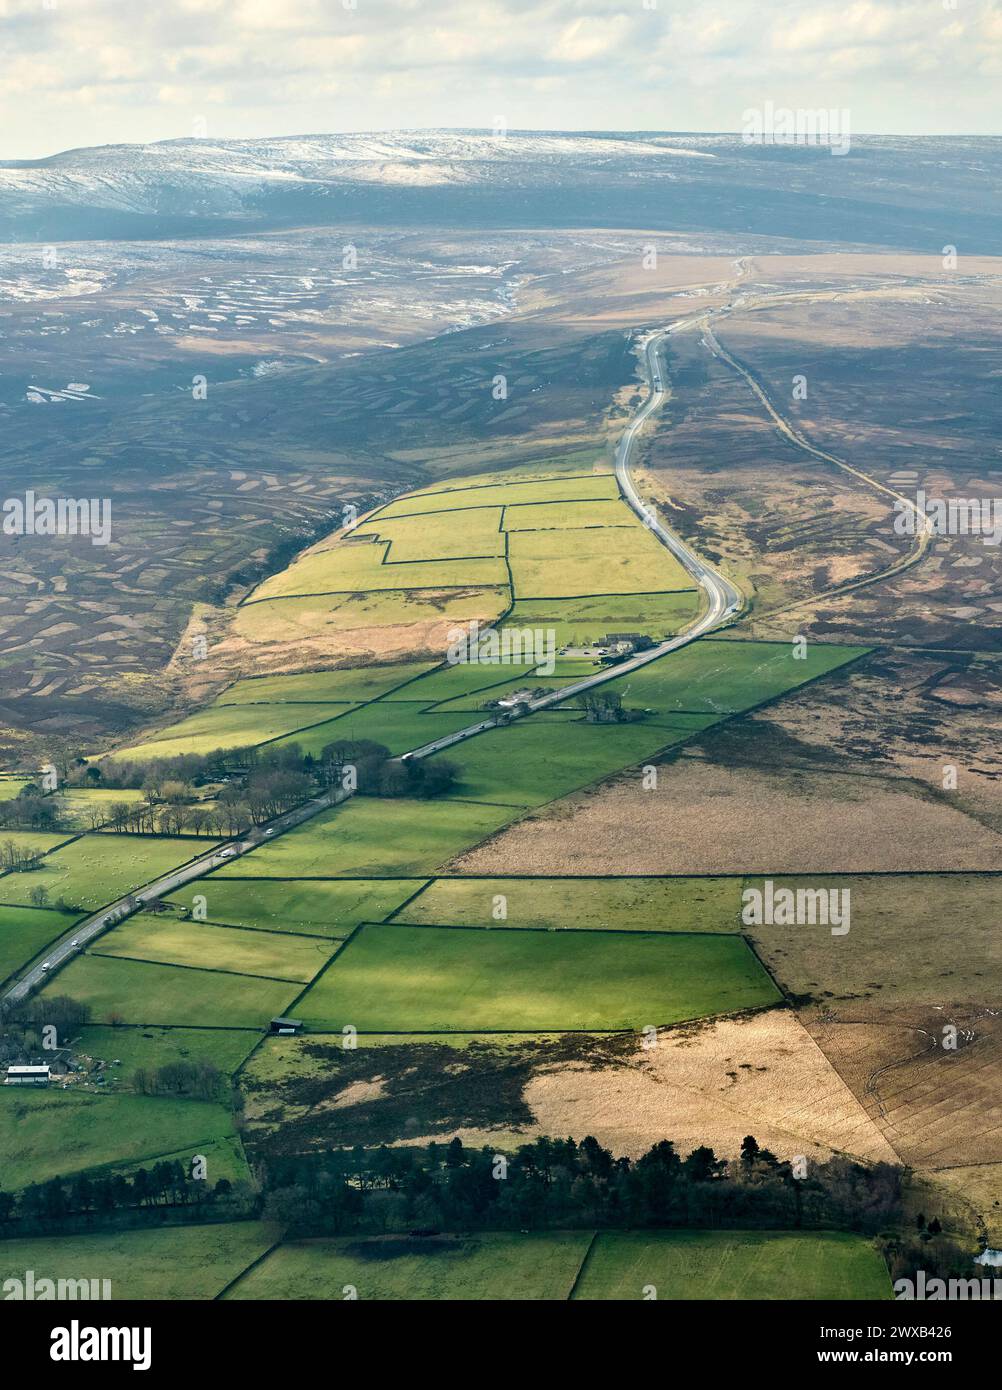 Un'immagine aerea del percorso A628 Woodhead attraverso i Pennines, girato a ovest dall'alto di Langsett, South Yorkshire, Inghilterra settentrionale, Regno Unito Foto Stock